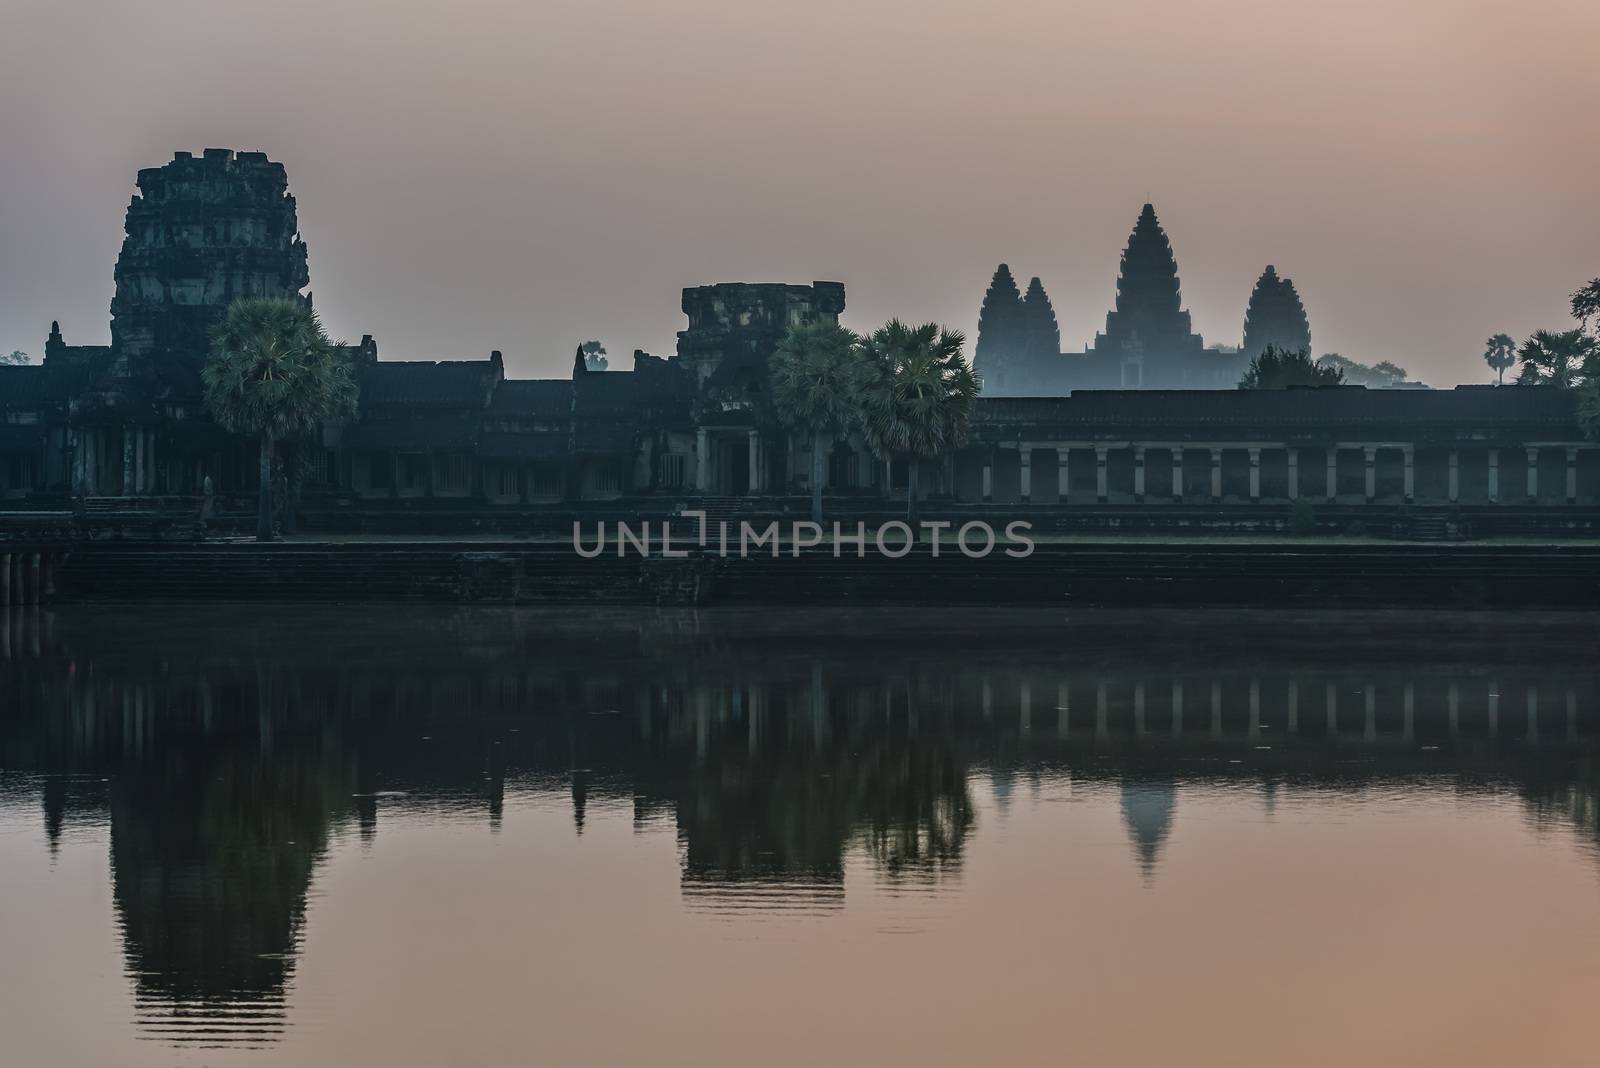 angkor wat panorama viewed across the moat at cambodia